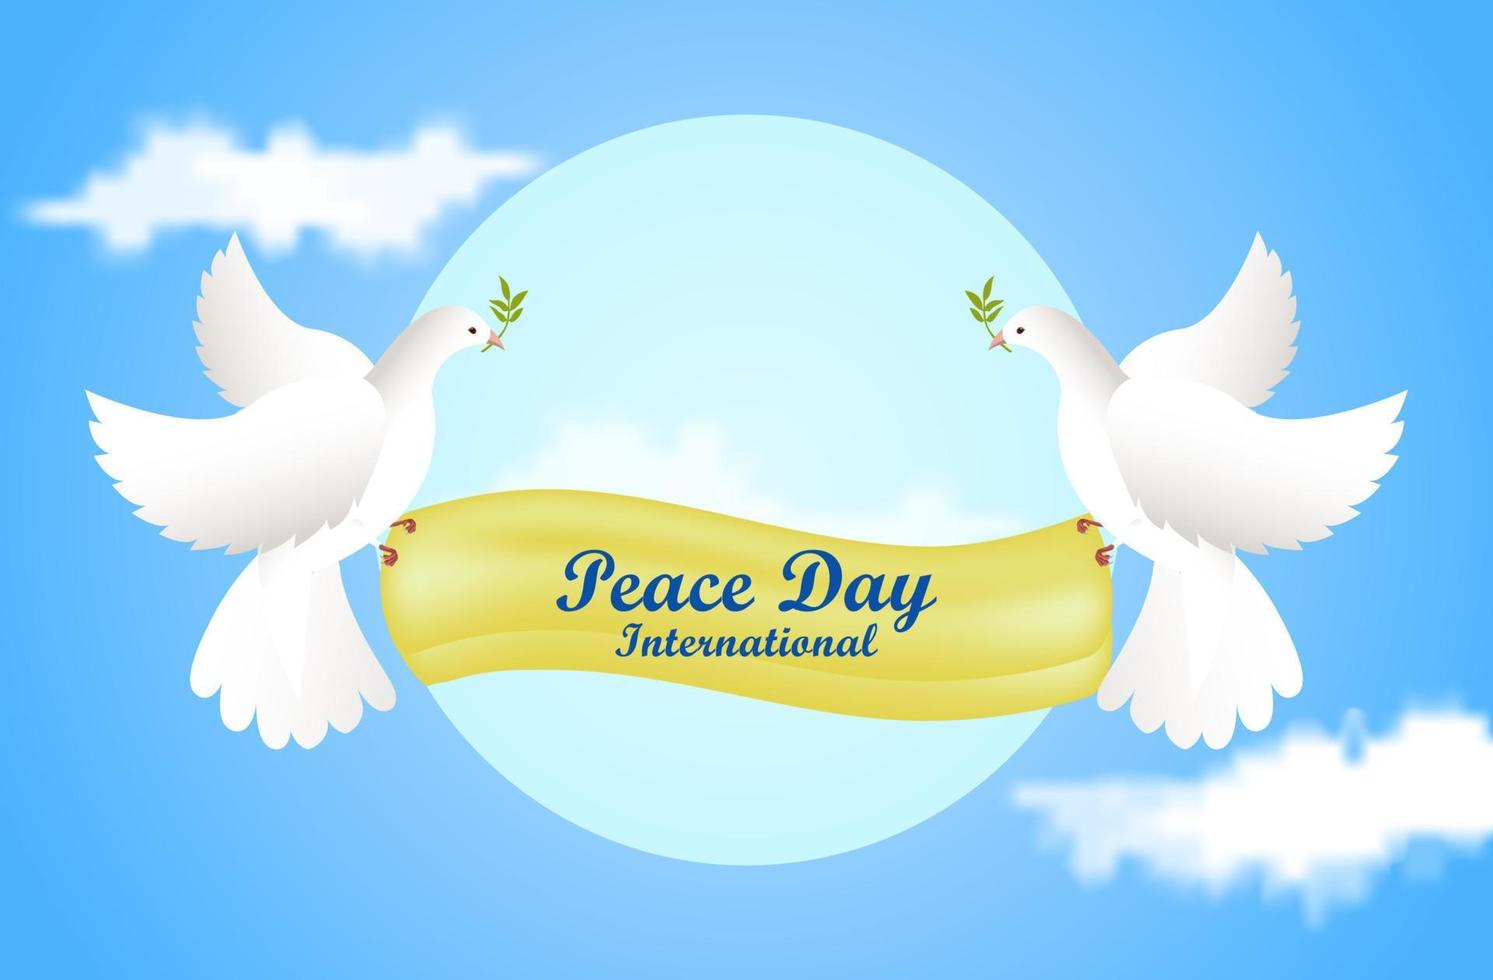 sfondo della giornata mondiale della pace con colombe in stile disegnato a mano vettore